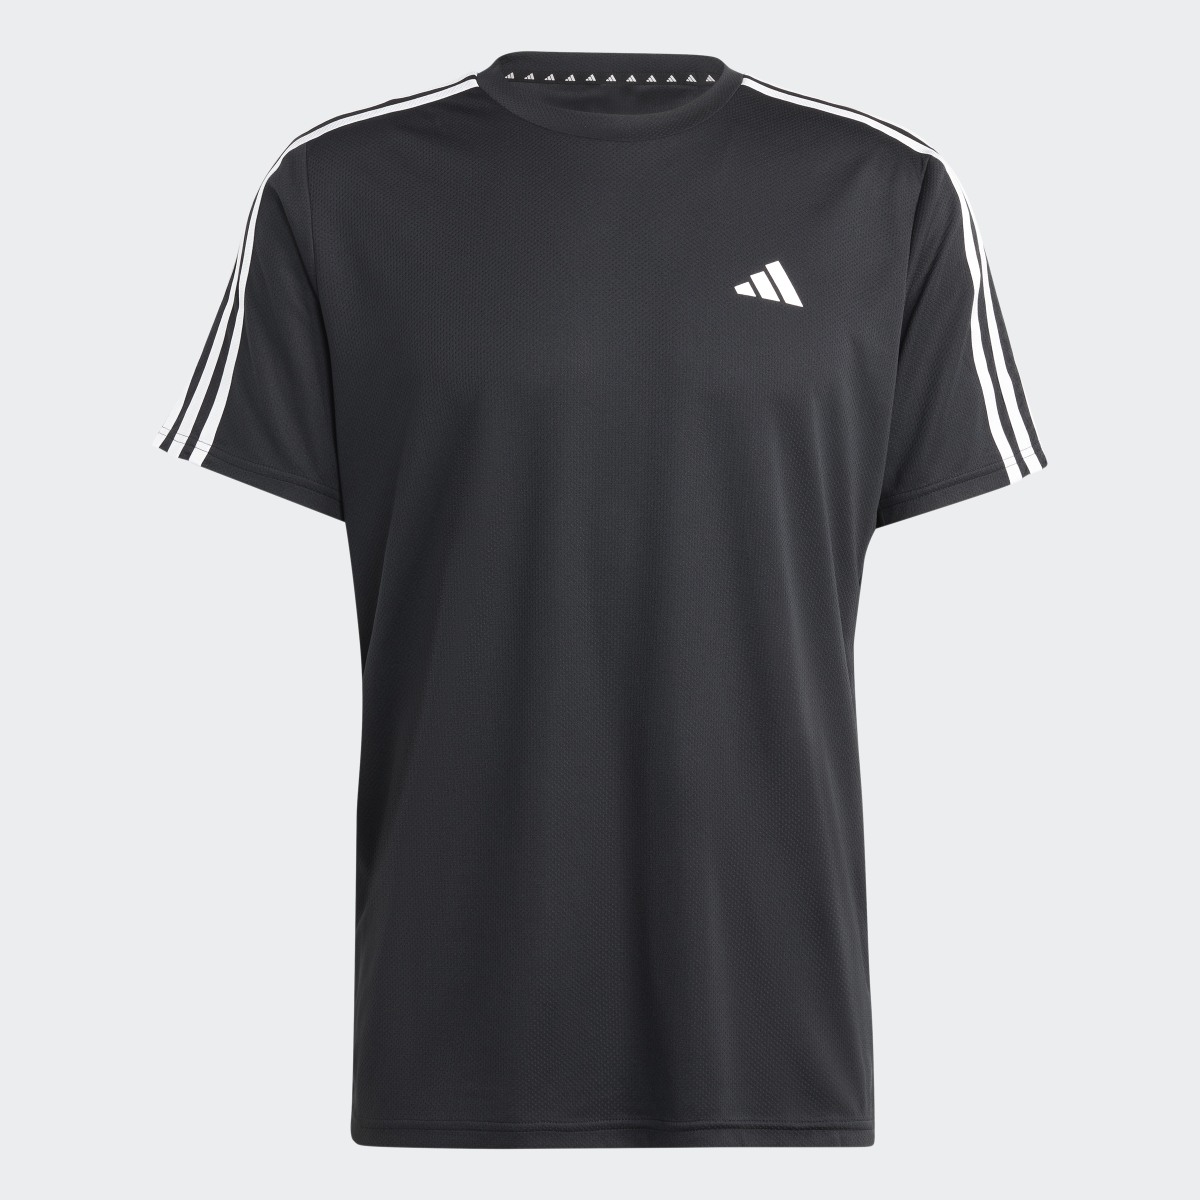 Adidas Train Essentials 3-Streifen Training T-Shirt. 5